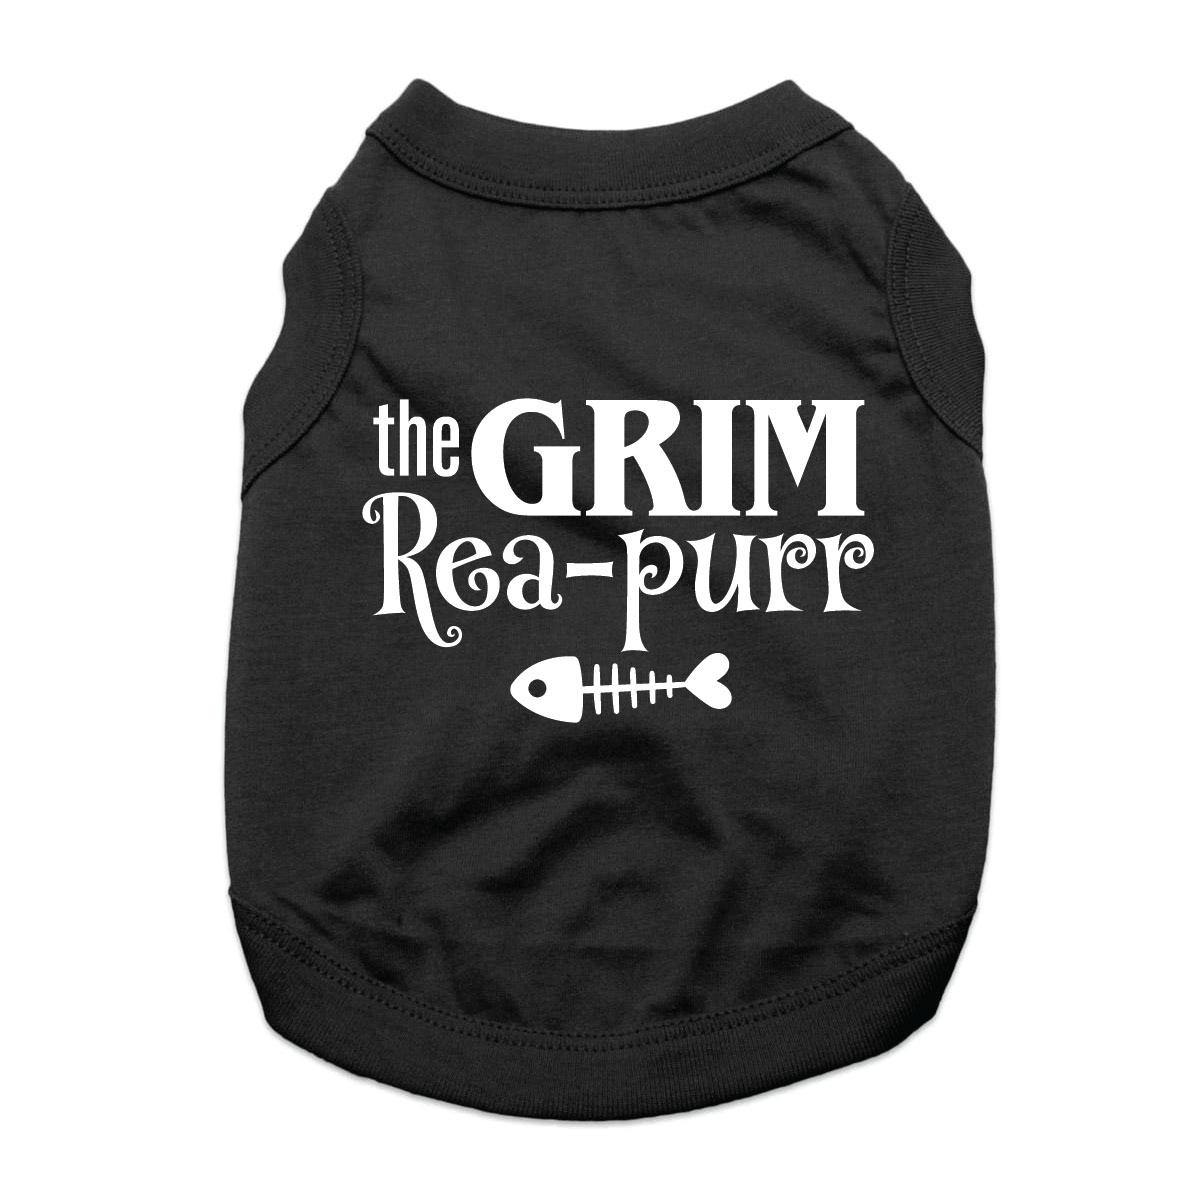 The Grim Rea-Purr Cat Shirt - Black